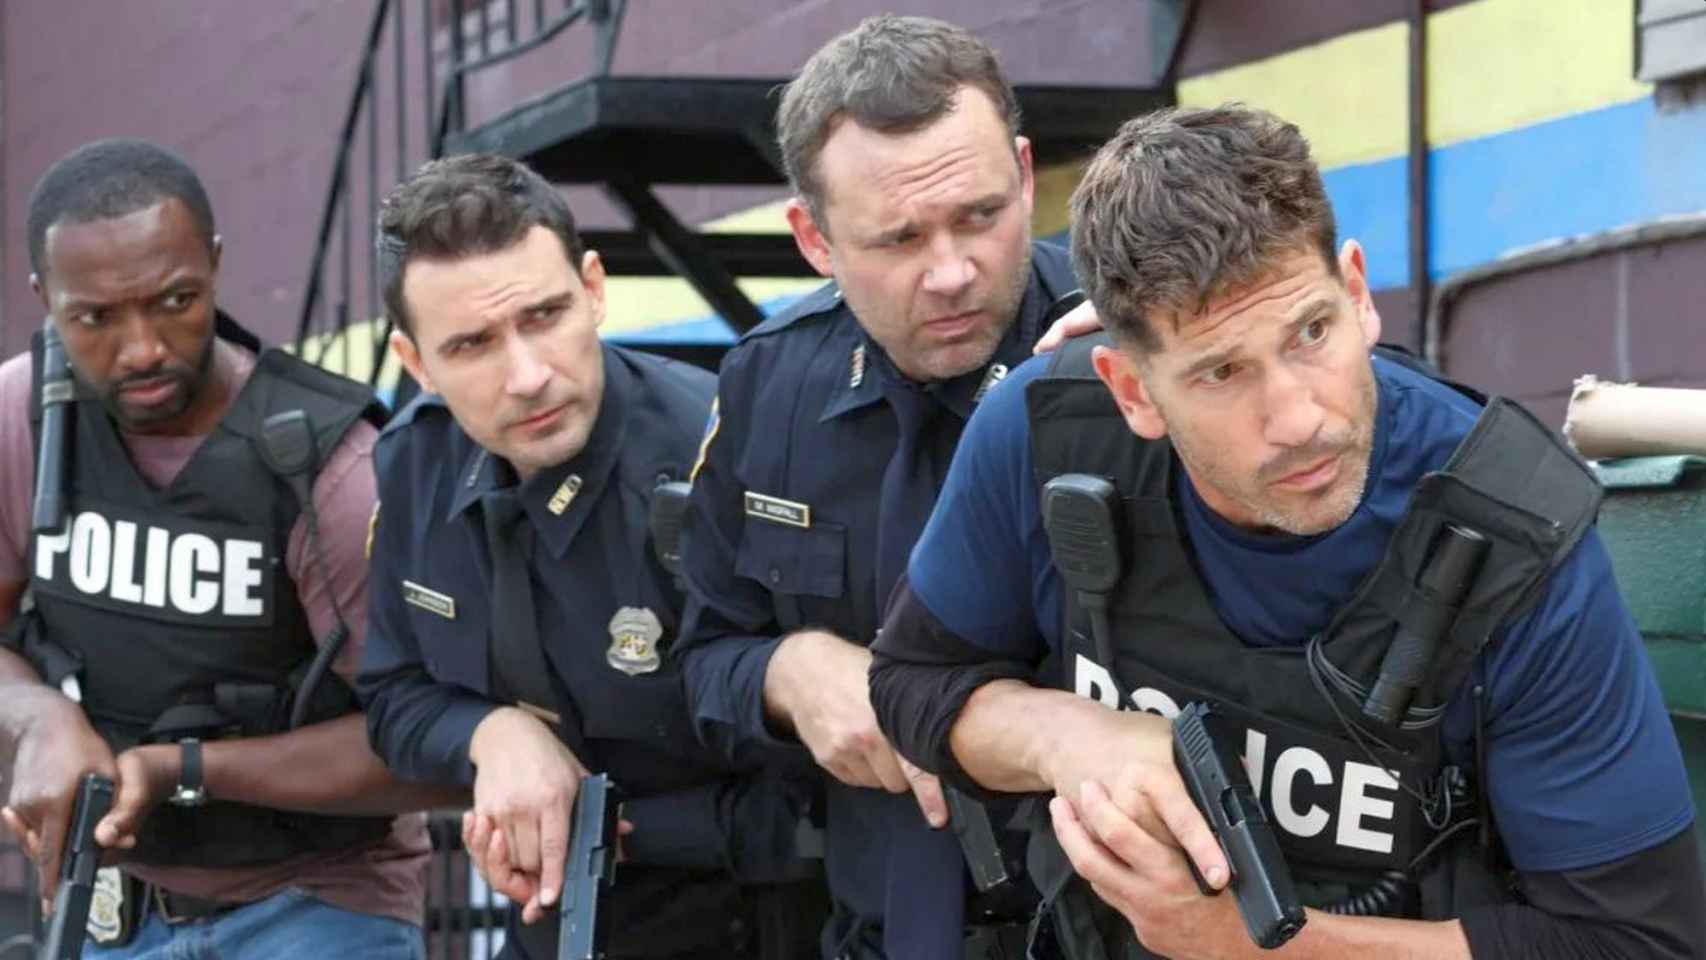 Cidade de Deus': Equipe da série da HBO Max acusa policiais